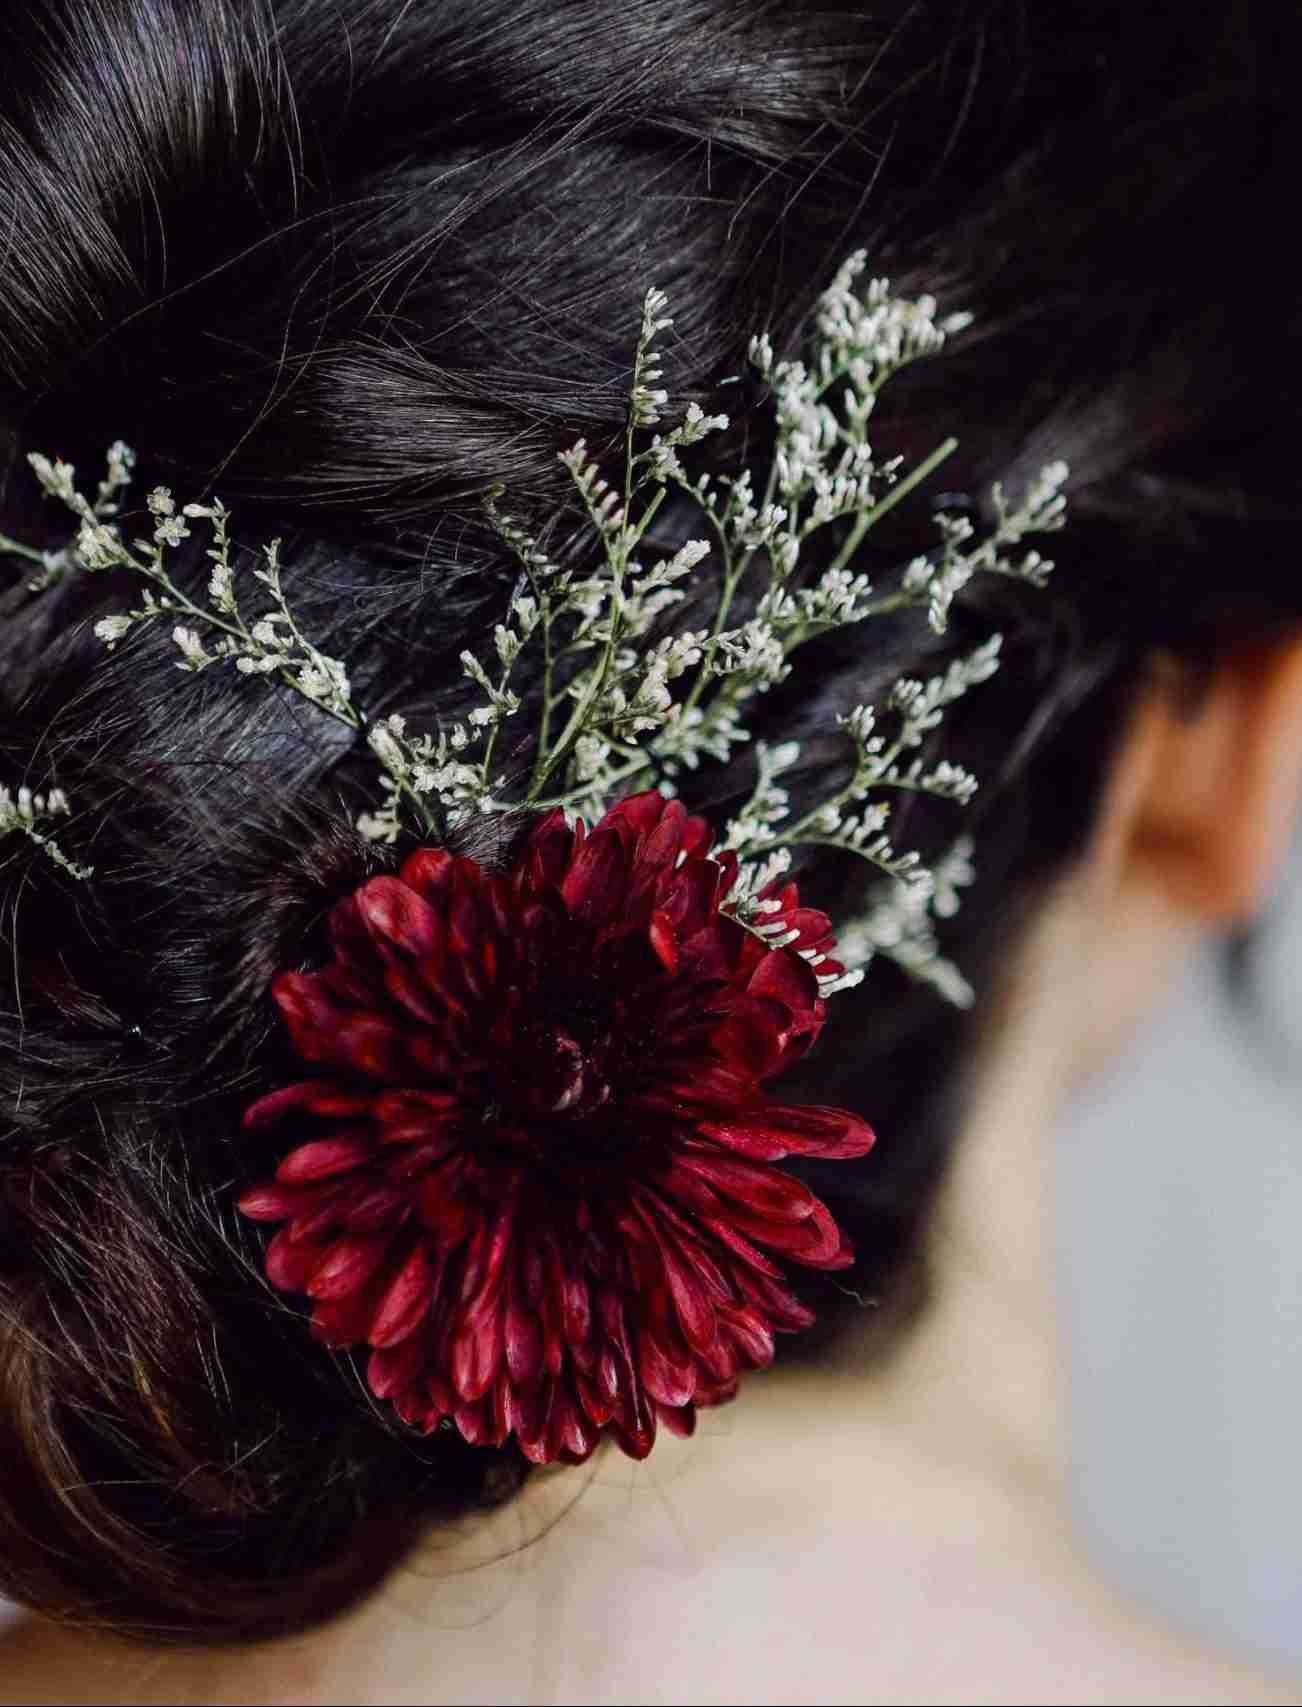 Acconciatura da sposa fiore rosso Matrimonio Fotografa Venezia Veneto